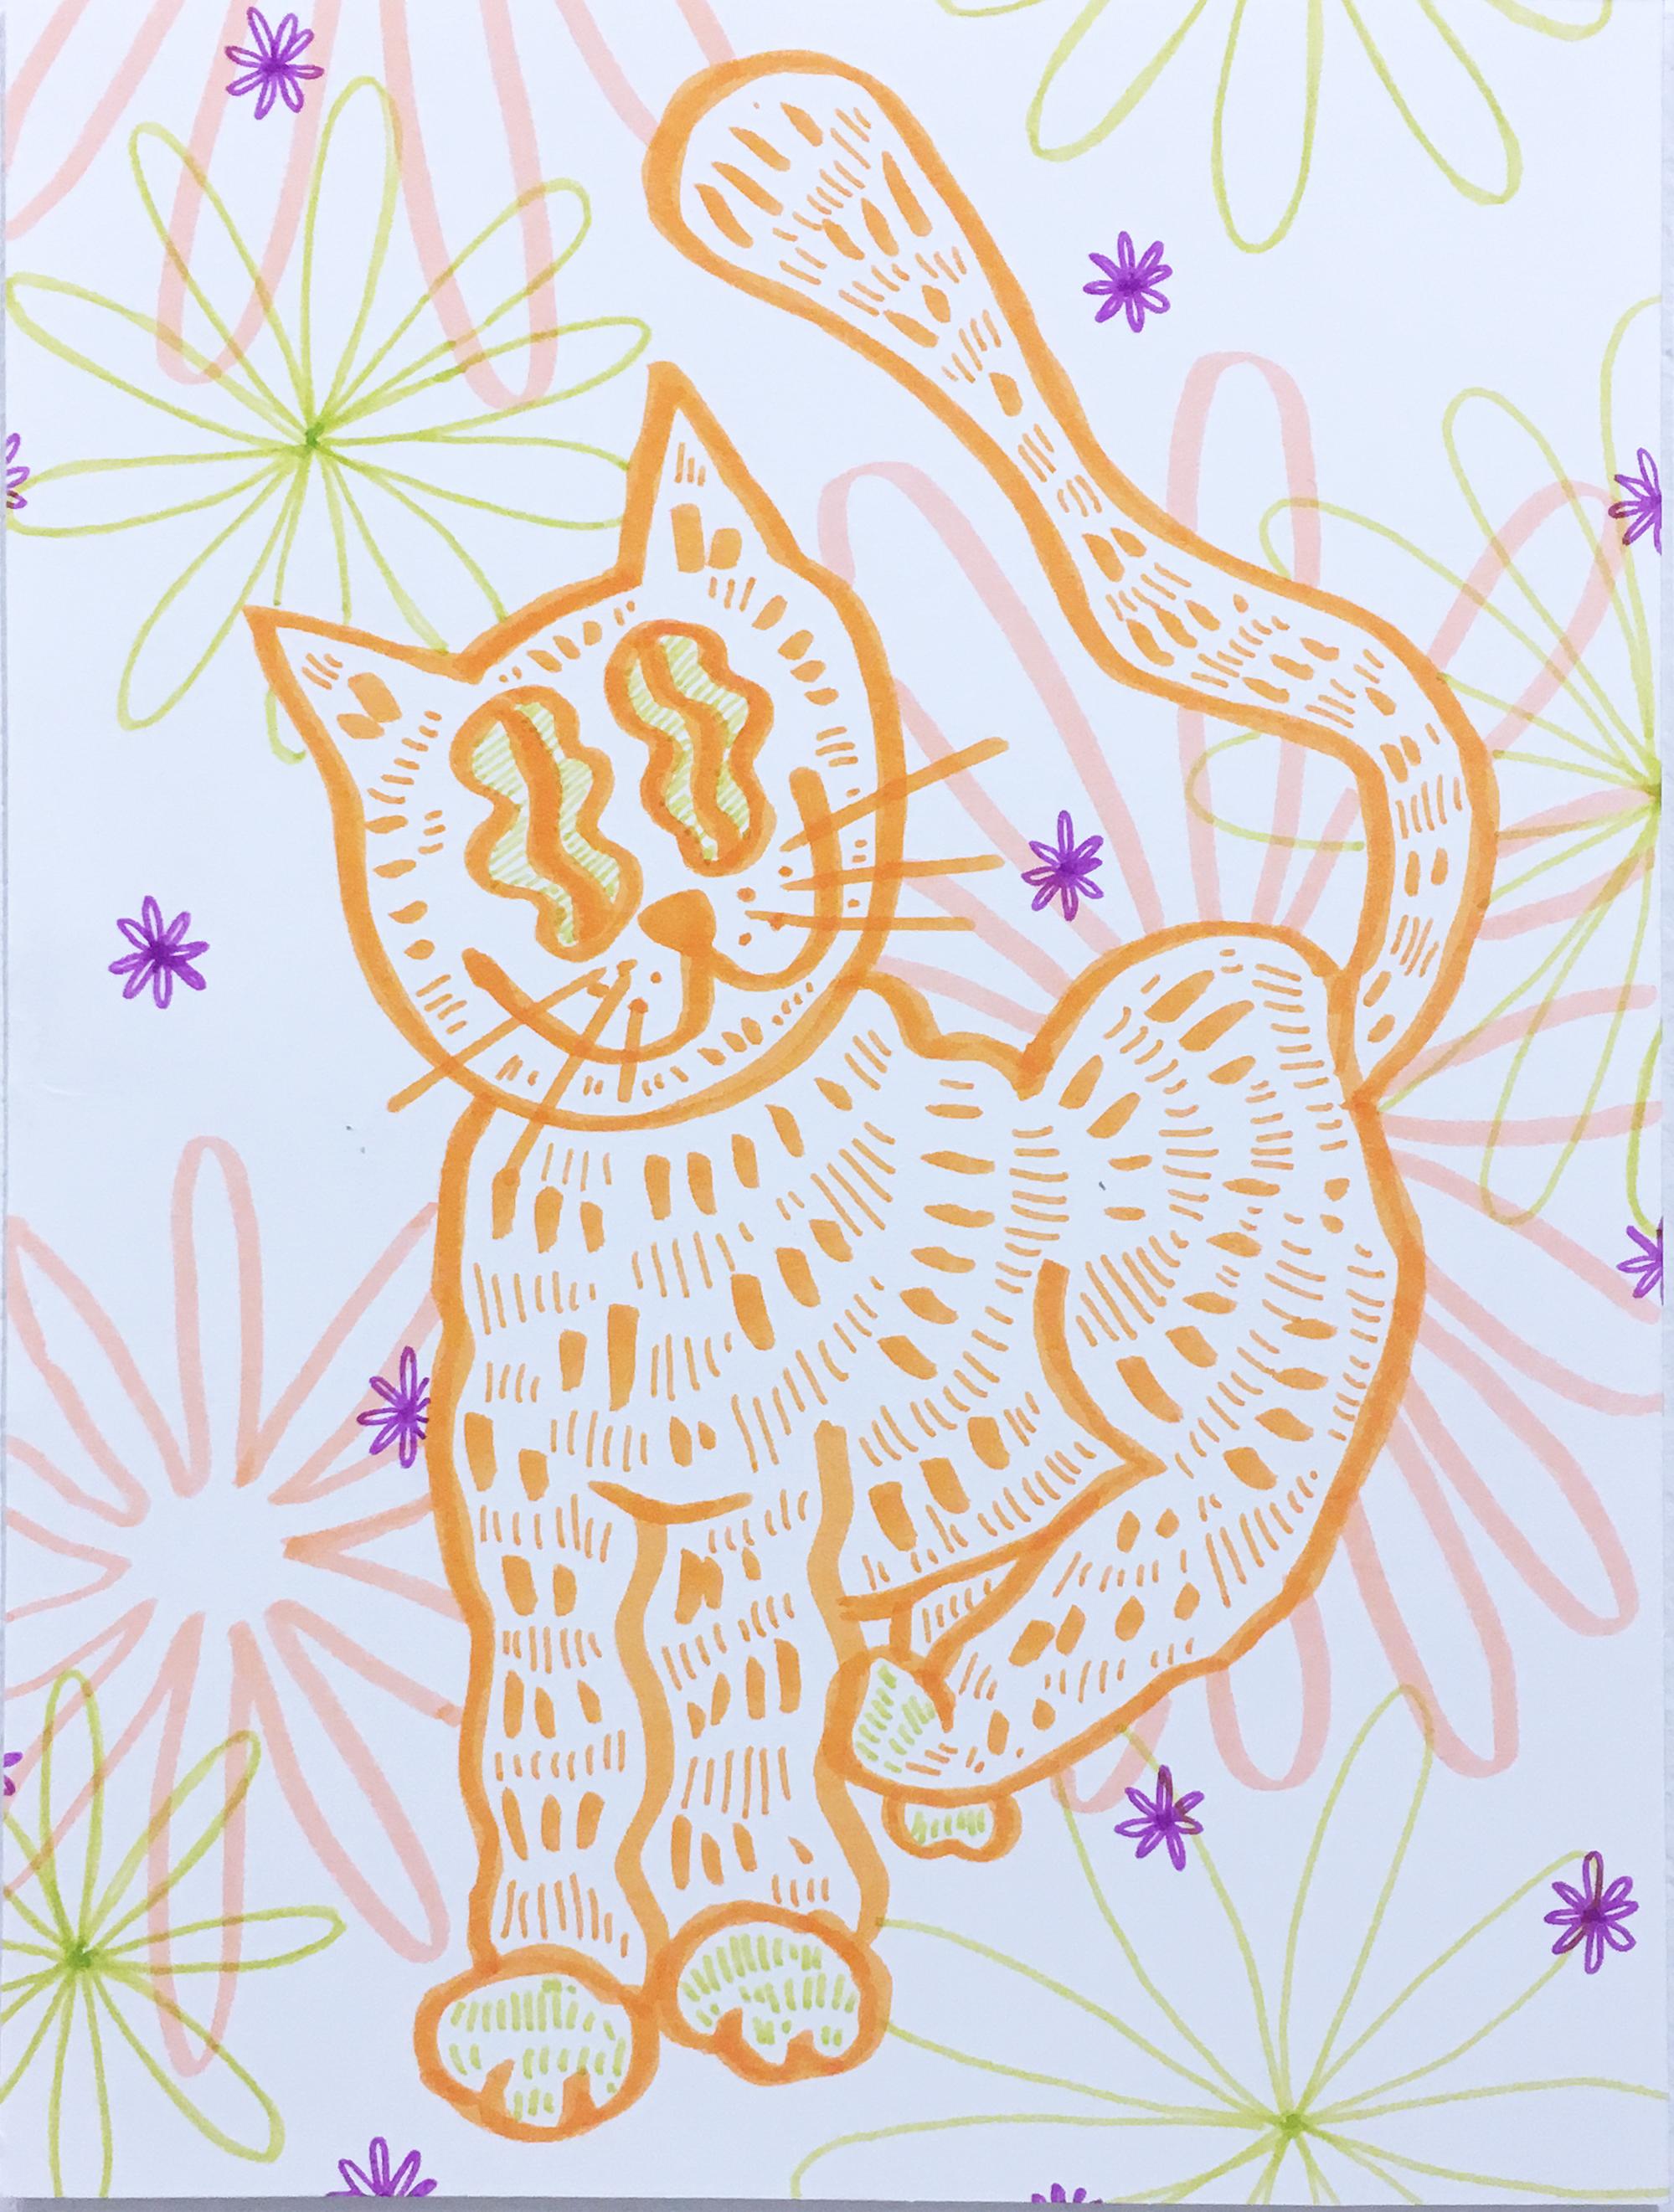 Weich und flauschig, Aquarellpapier-Zeichnung, Katze mit Blumen, gewelltes Muster